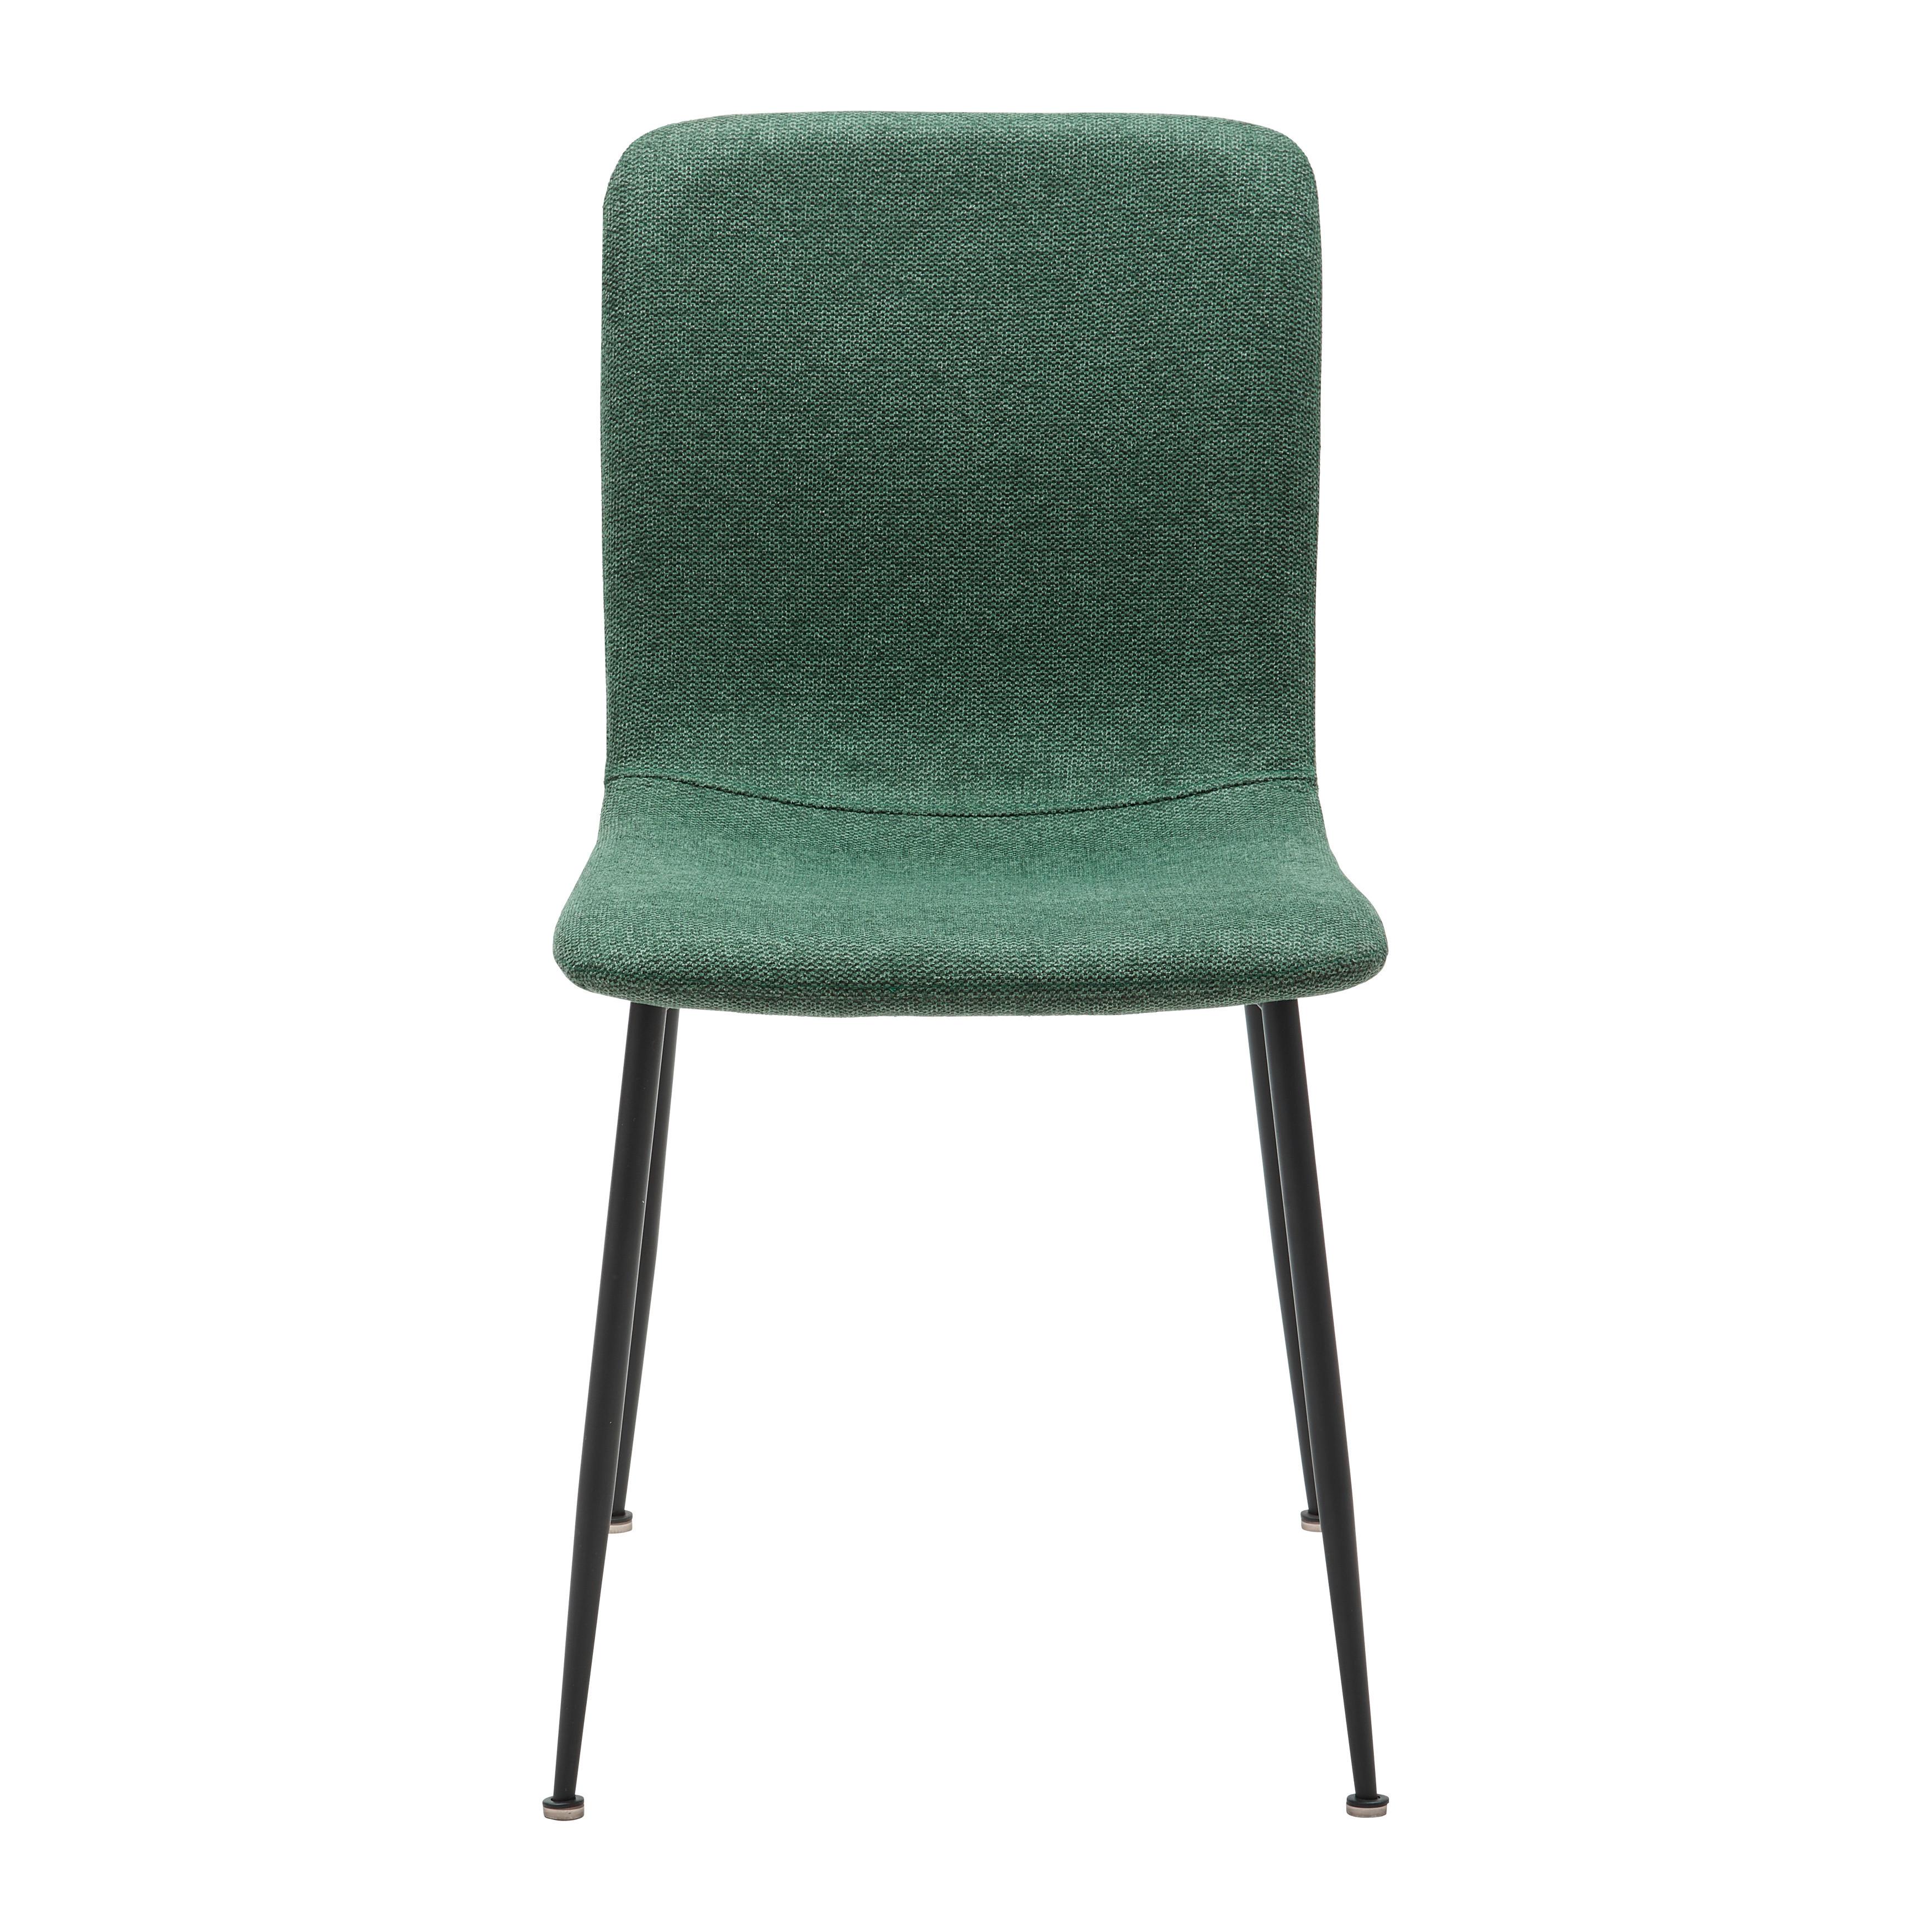 Jídelní Židle Nele Zelená - černá/zelená, Moderní, kov/dřevo (43/83/56cm) - P & B